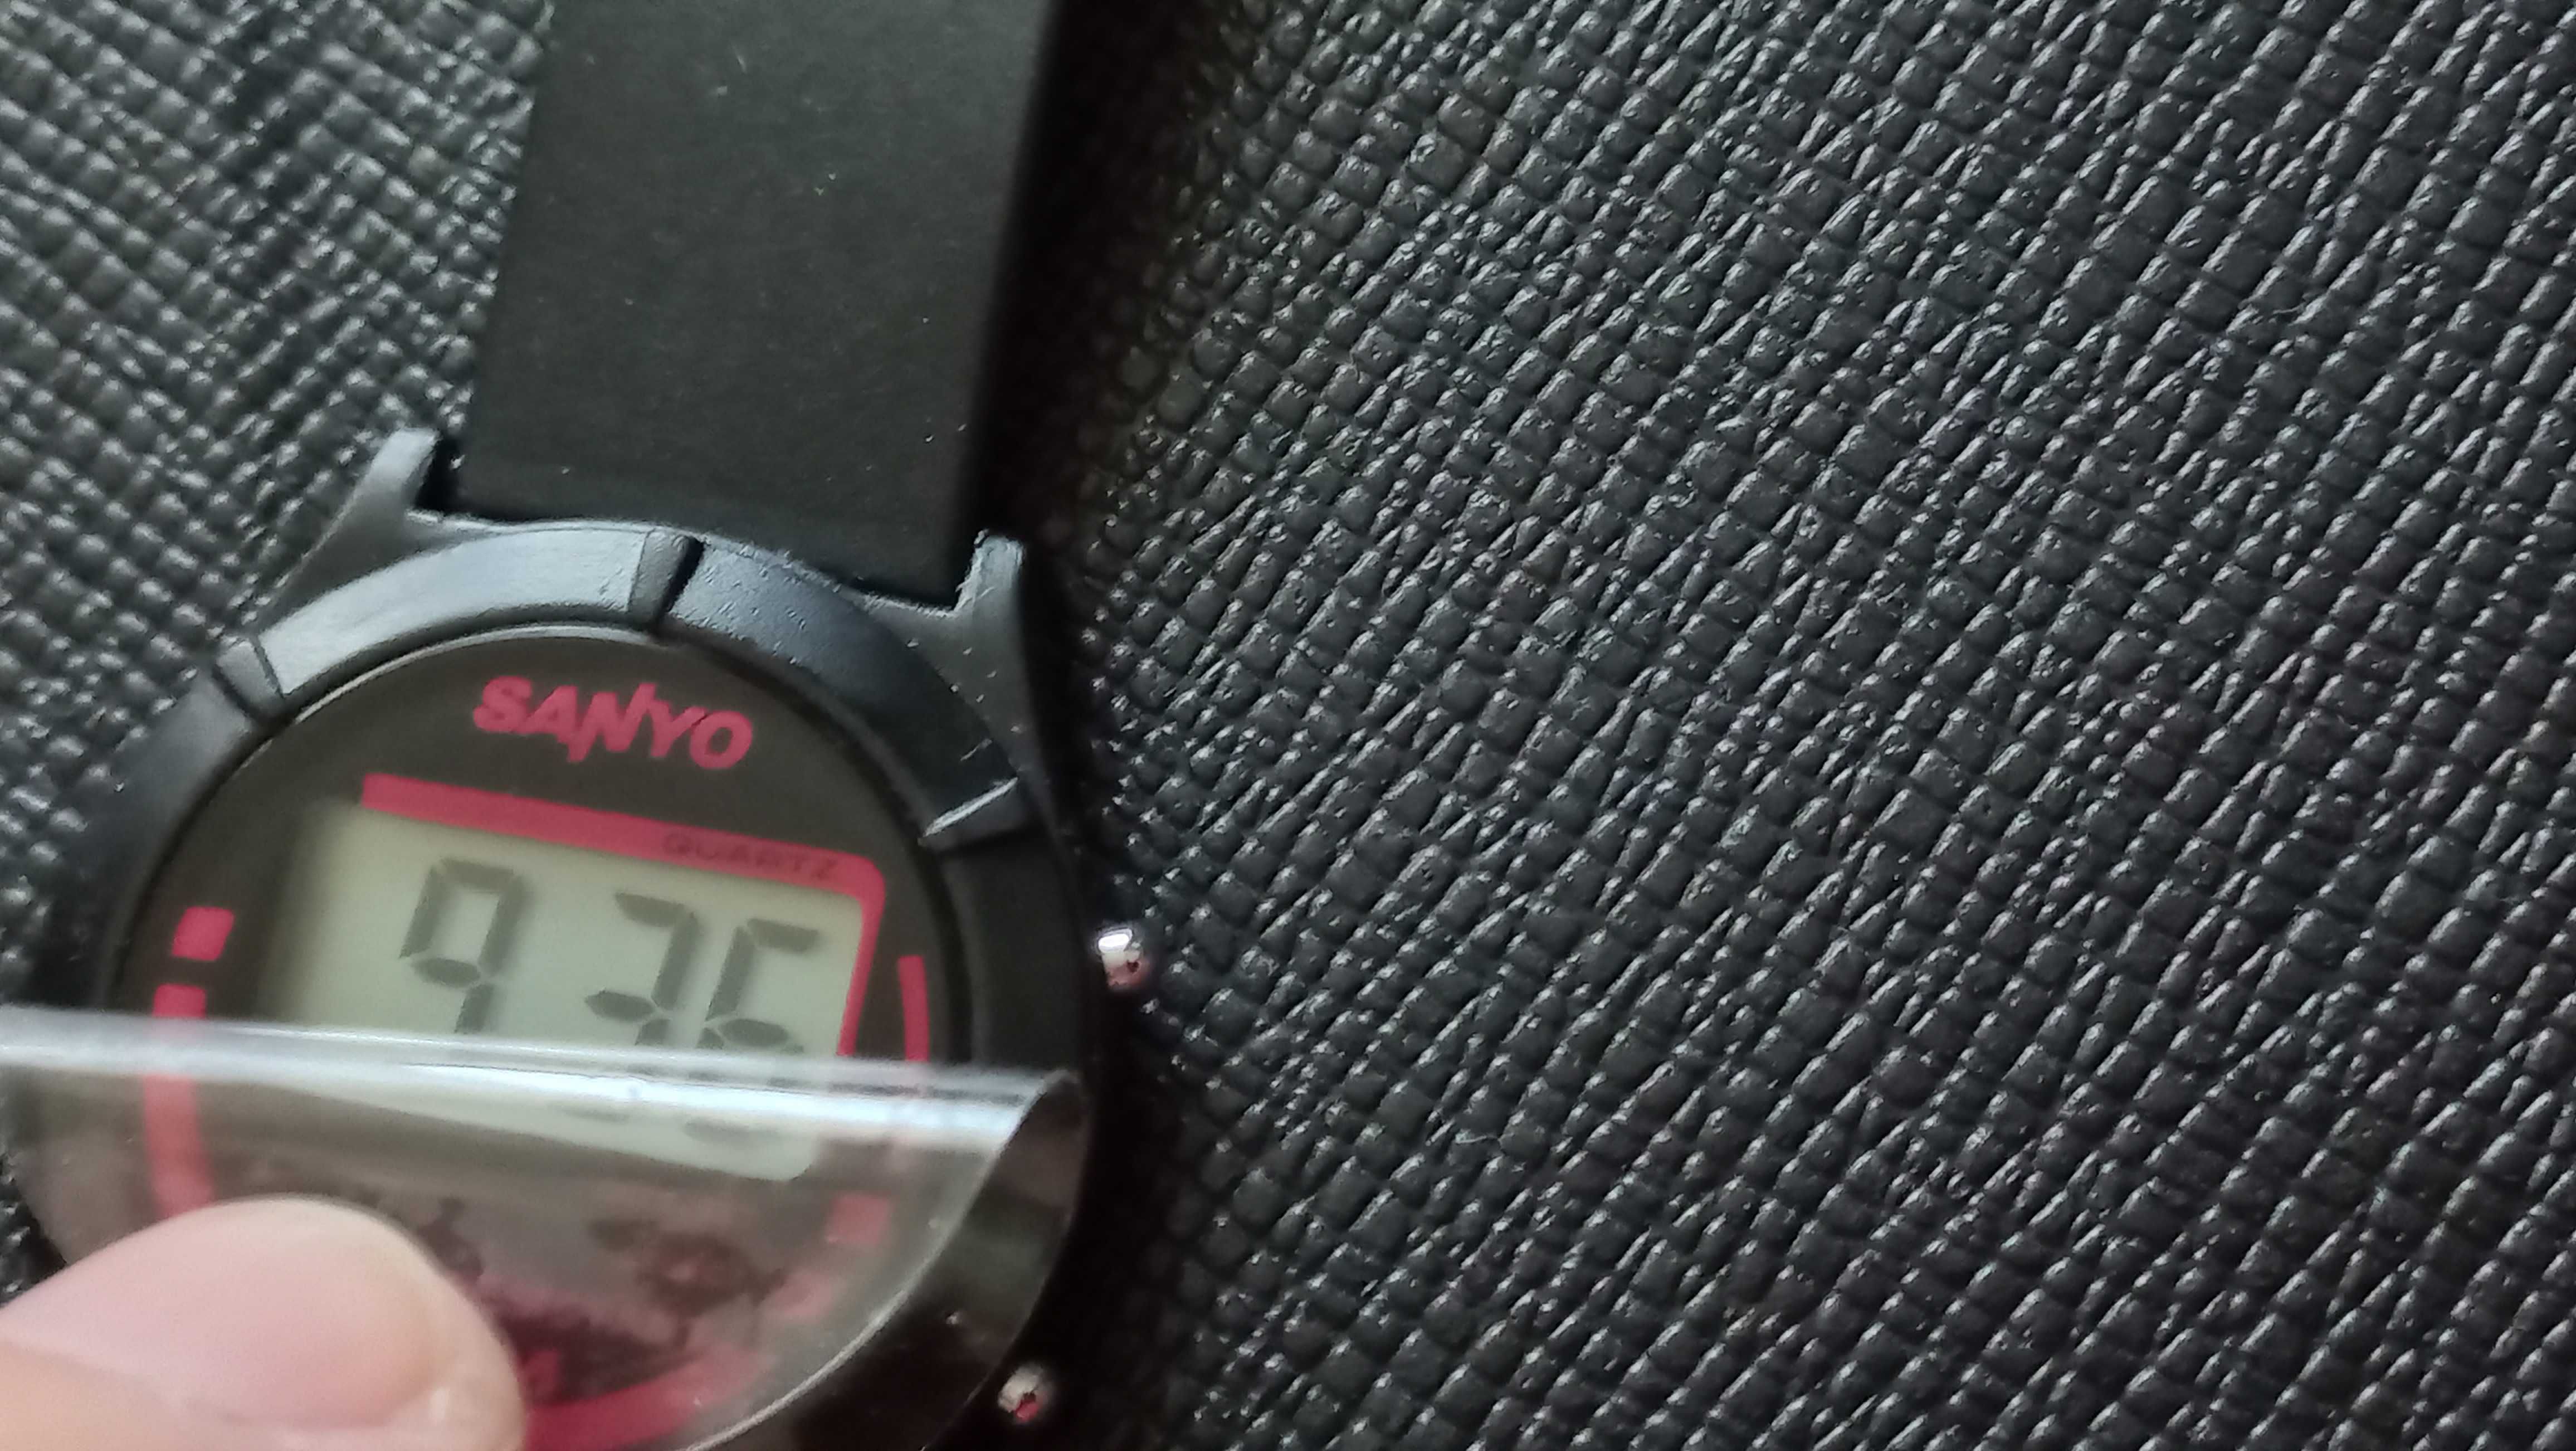 Sprzedam męski, japoński zegarek sportowy Sanyo